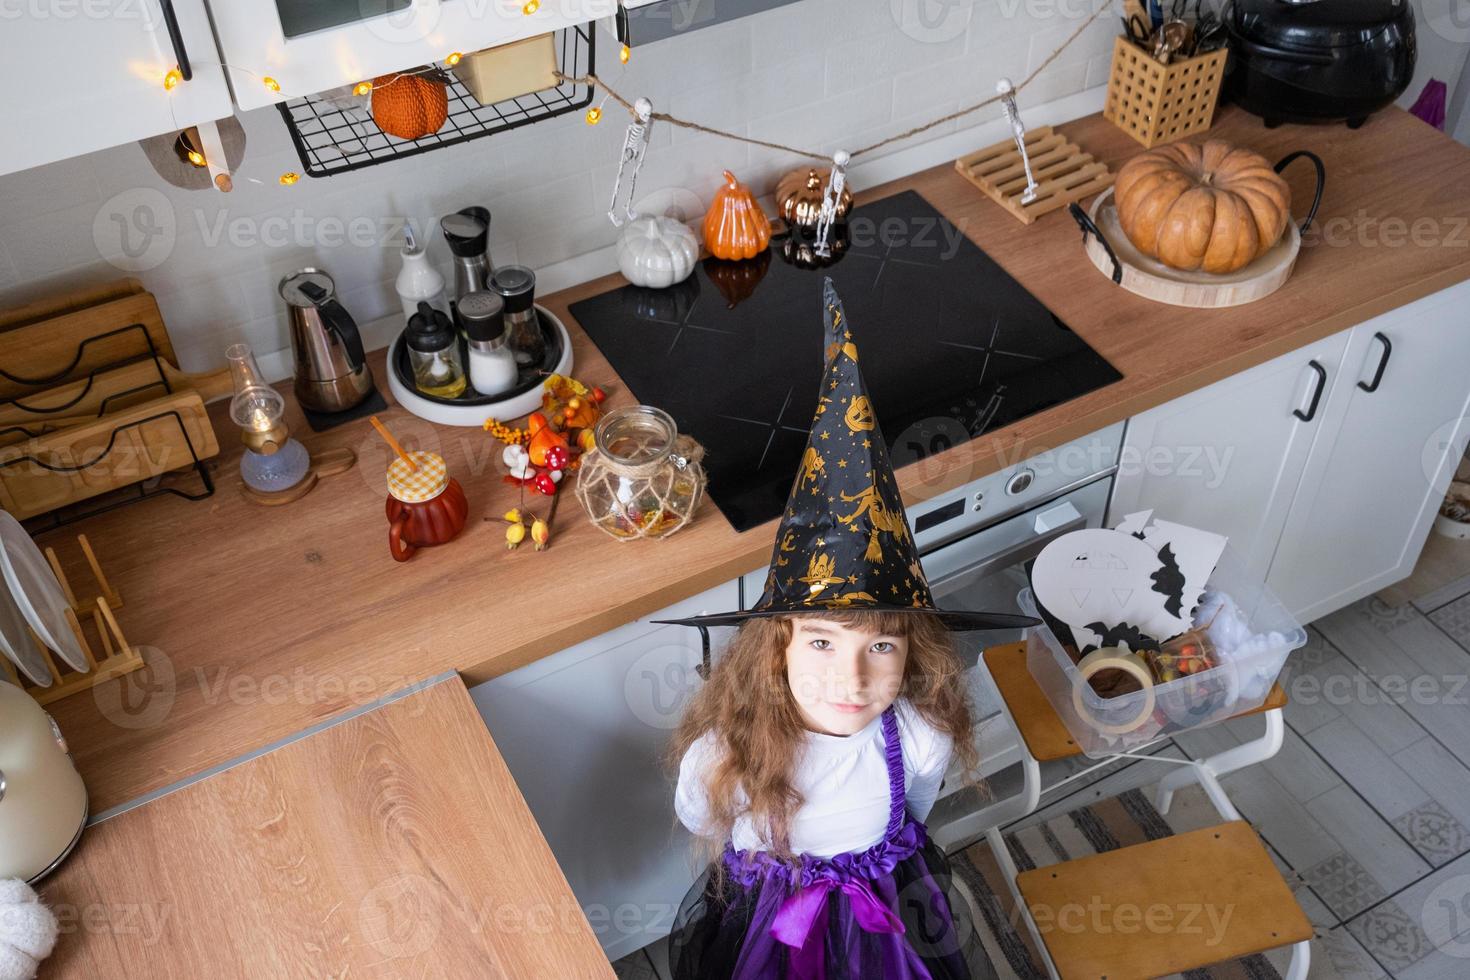 Kind schmückt die Küche zu Hause für Halloween. Mädchen in einem Hexenkostüm spielt mit dem Dekor für den Urlaub - Fledermäuse, Jack-Laterne, Kürbisse. Herbstkomfort im Haus, Küche im Scandi-Stil, Dachboden foto